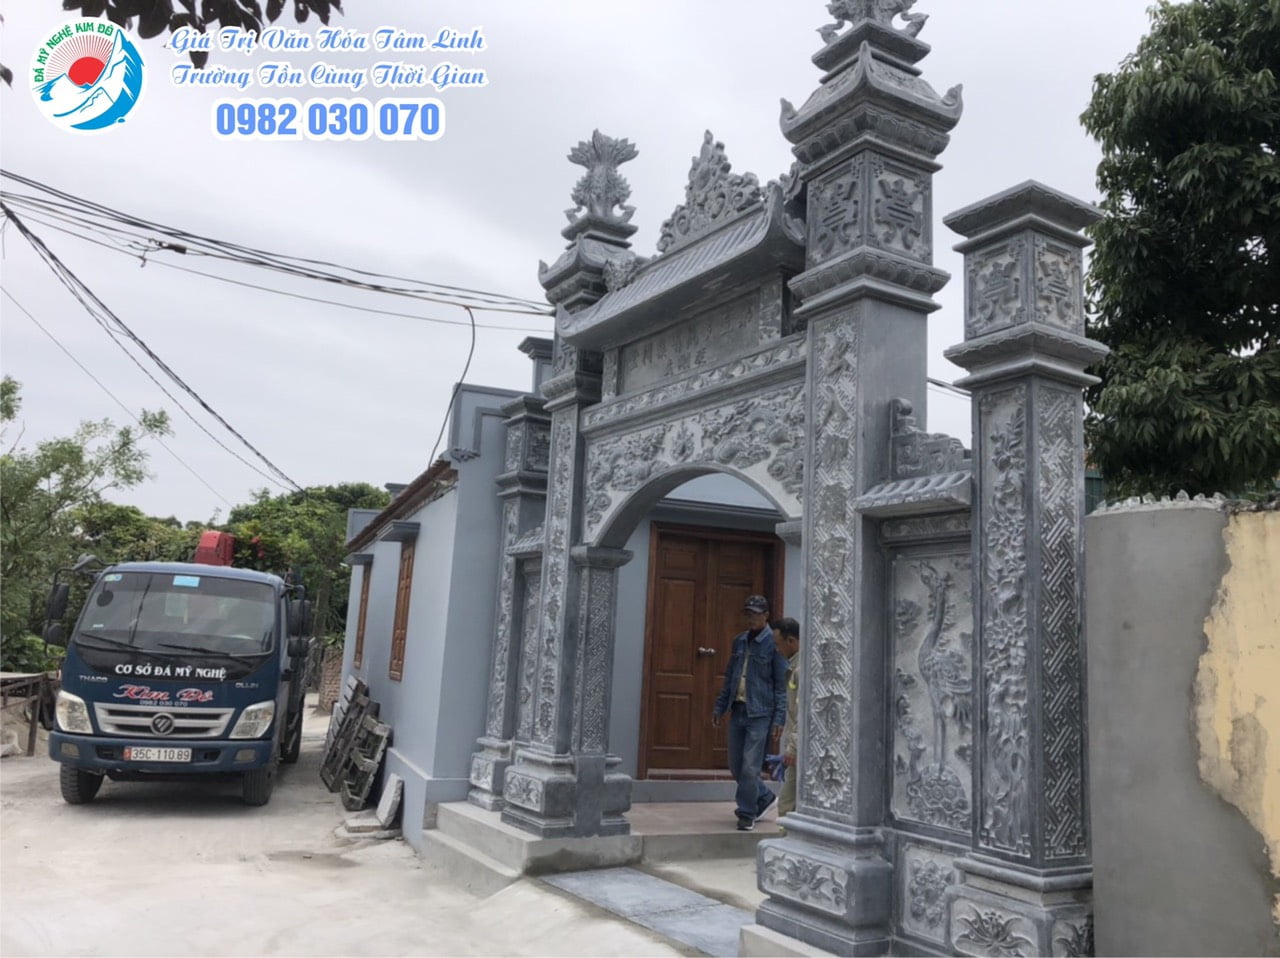 Lắp đặt Hoàn thiện Bộ cổng đá đẹp cho Nhà thờ họ Nguyễn Thái Bình, cổng đá đẹp, cổng tam quan đá, Cổng nhà thờ họ